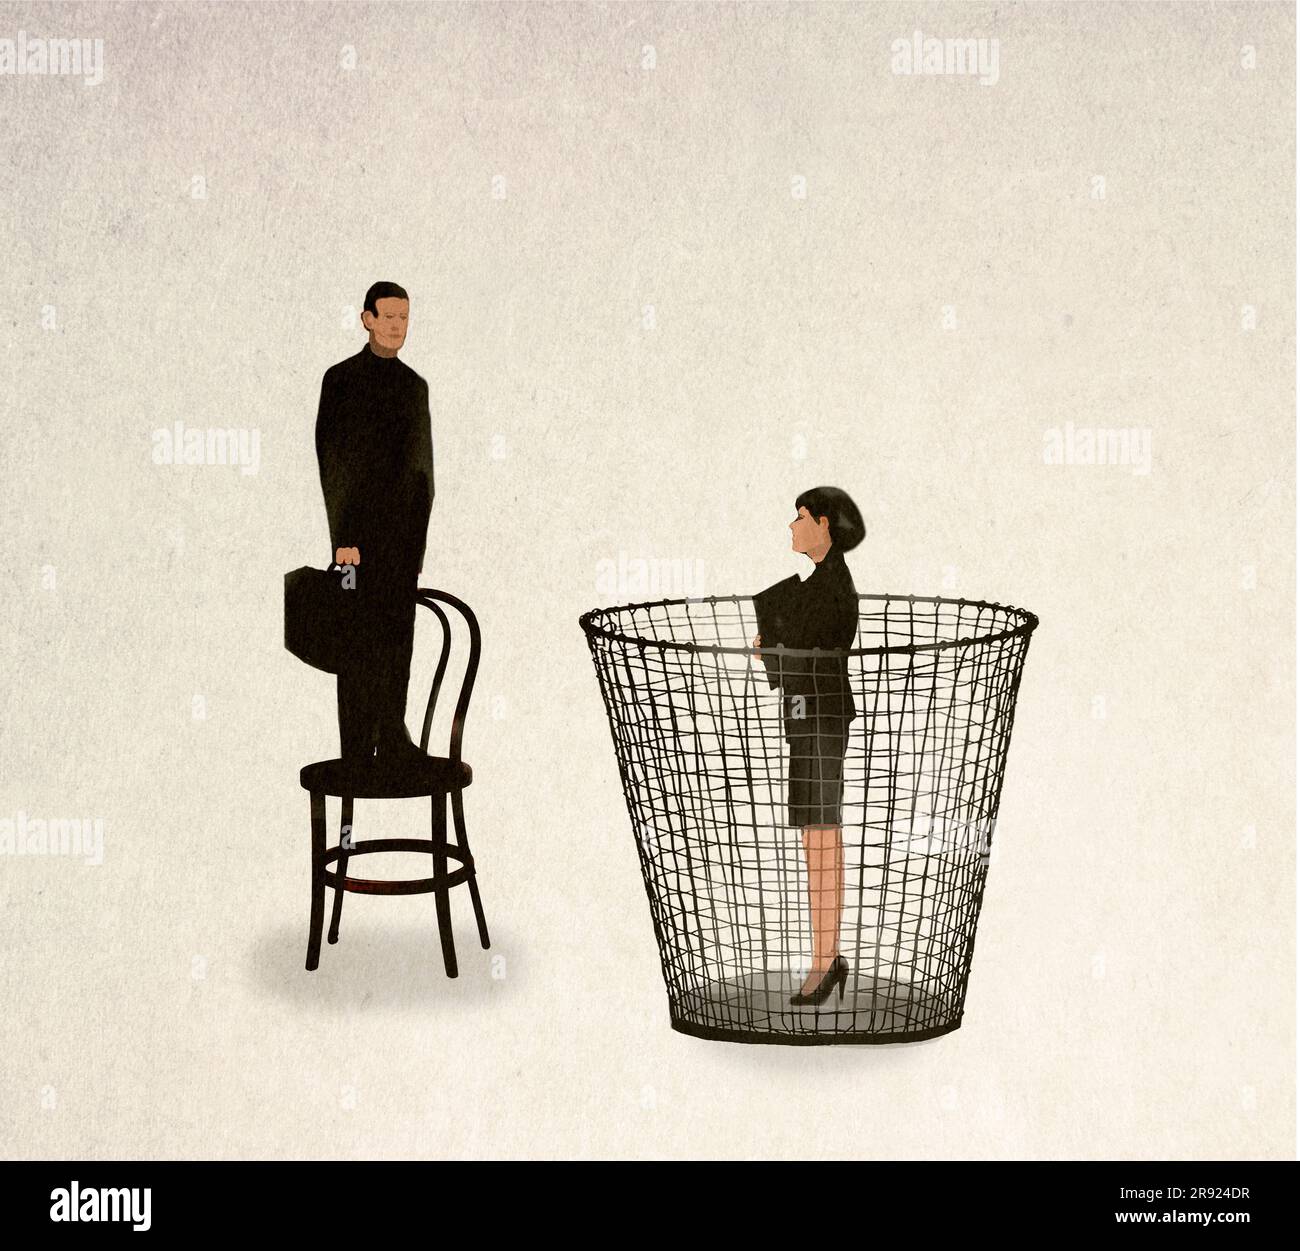 Abbildung eines Mannes, der auf einem Stuhl steht, und einer Frau, die in einem Papierkorb steht und die Ungleichheit symbolisiert Stockfoto